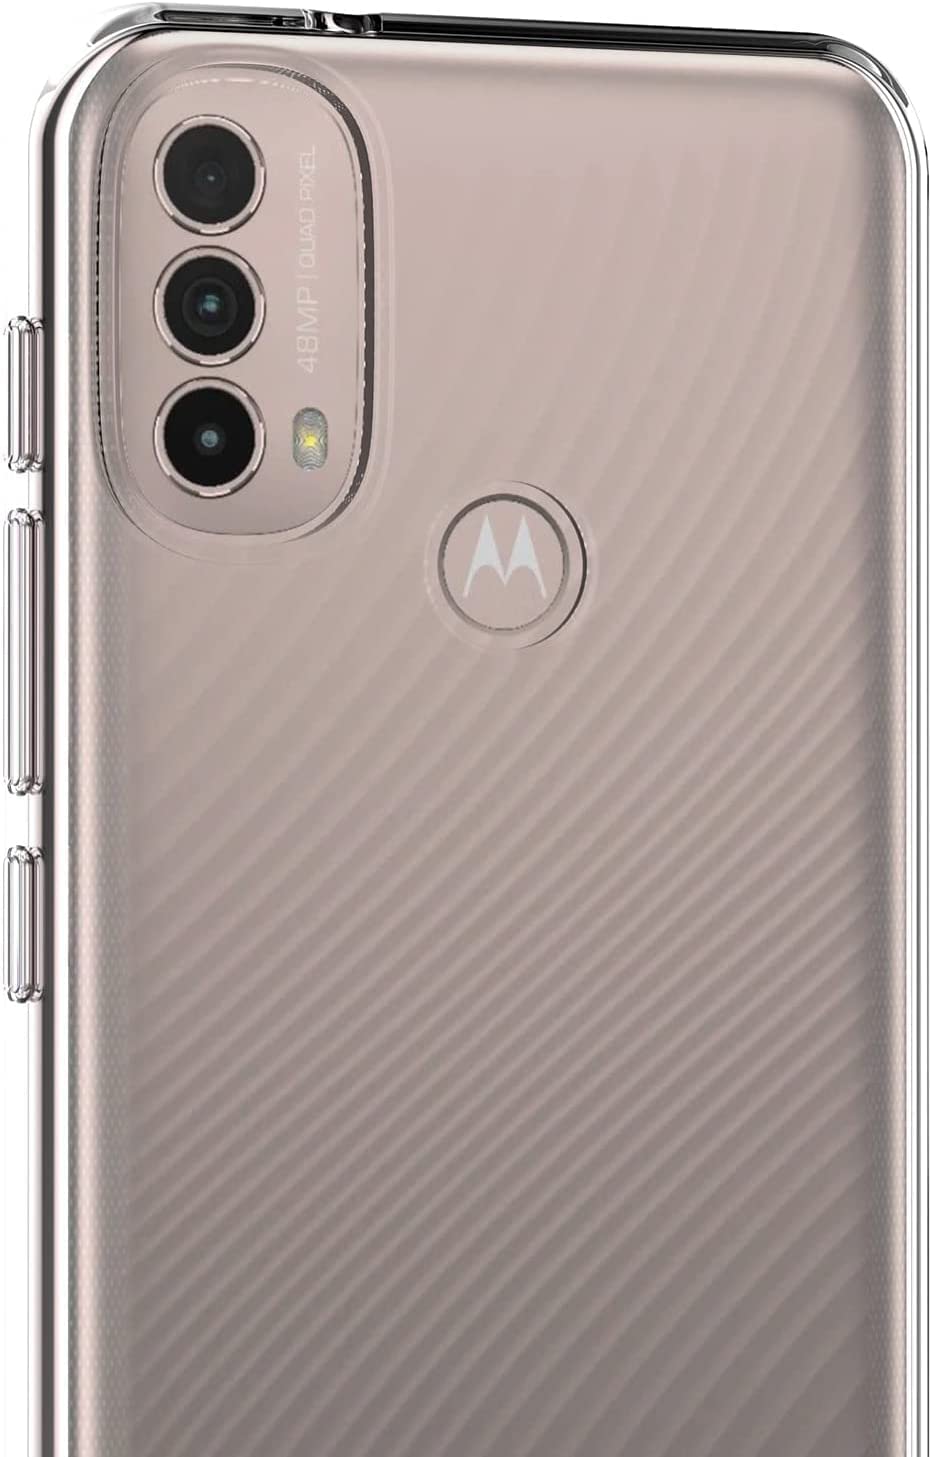 Motorola Moto E20 Gel TPU Clear Case Ultra Slim Soft Transparent Silicone Cover